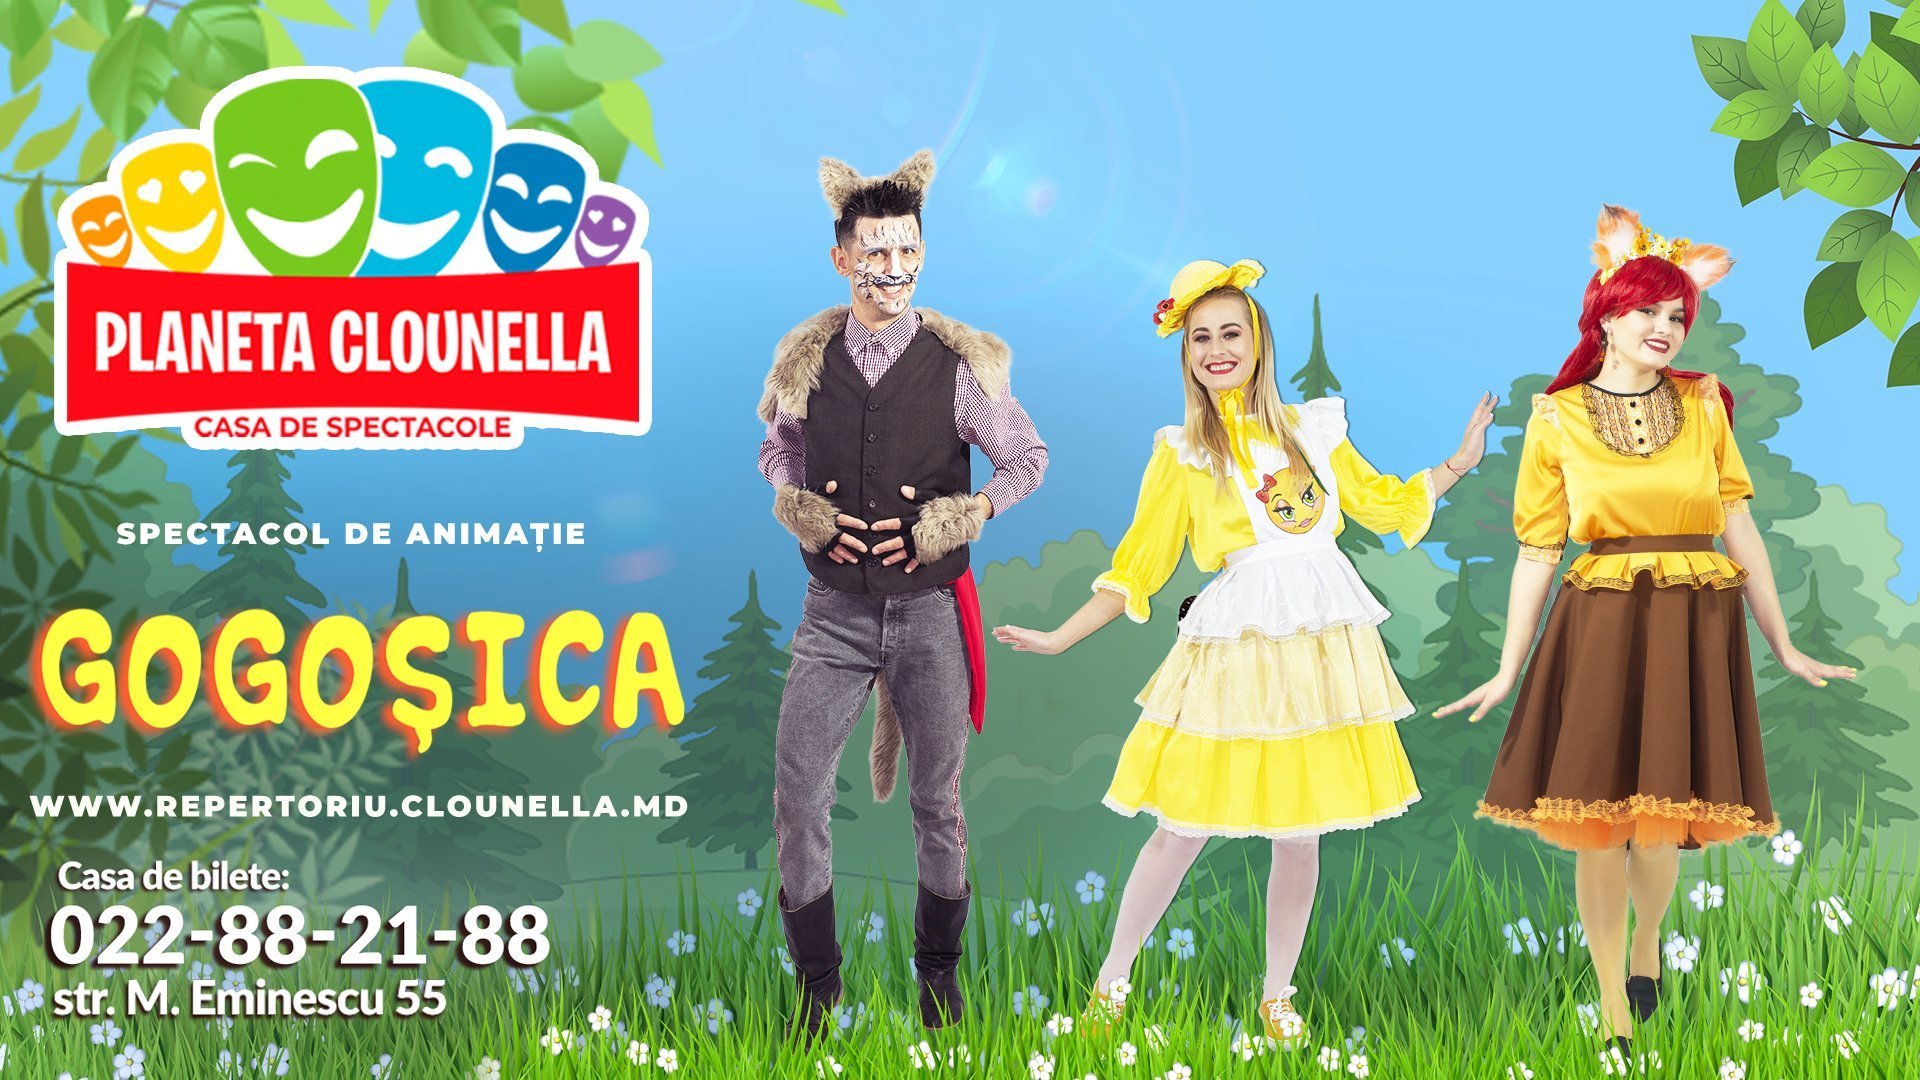 Gogosica (Acces Bilet - 125 lei pentru 14 zile) - Spectacol pentru Copii Adaptat in baza povestii clasice Gogoasa